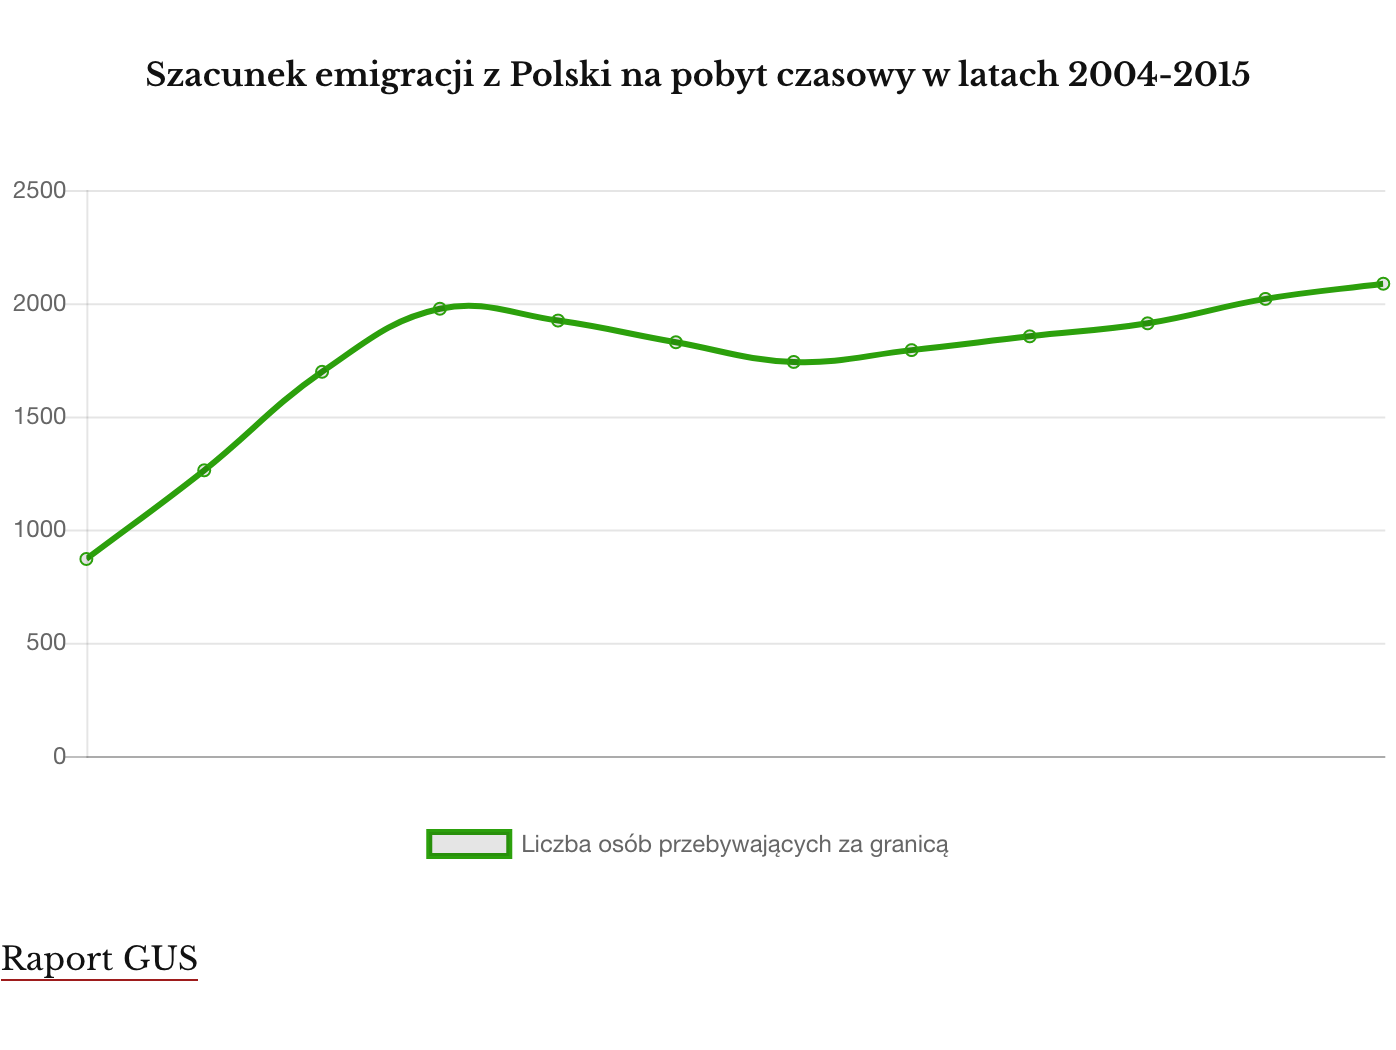 Szacunek emigracji w latach 2004-2015